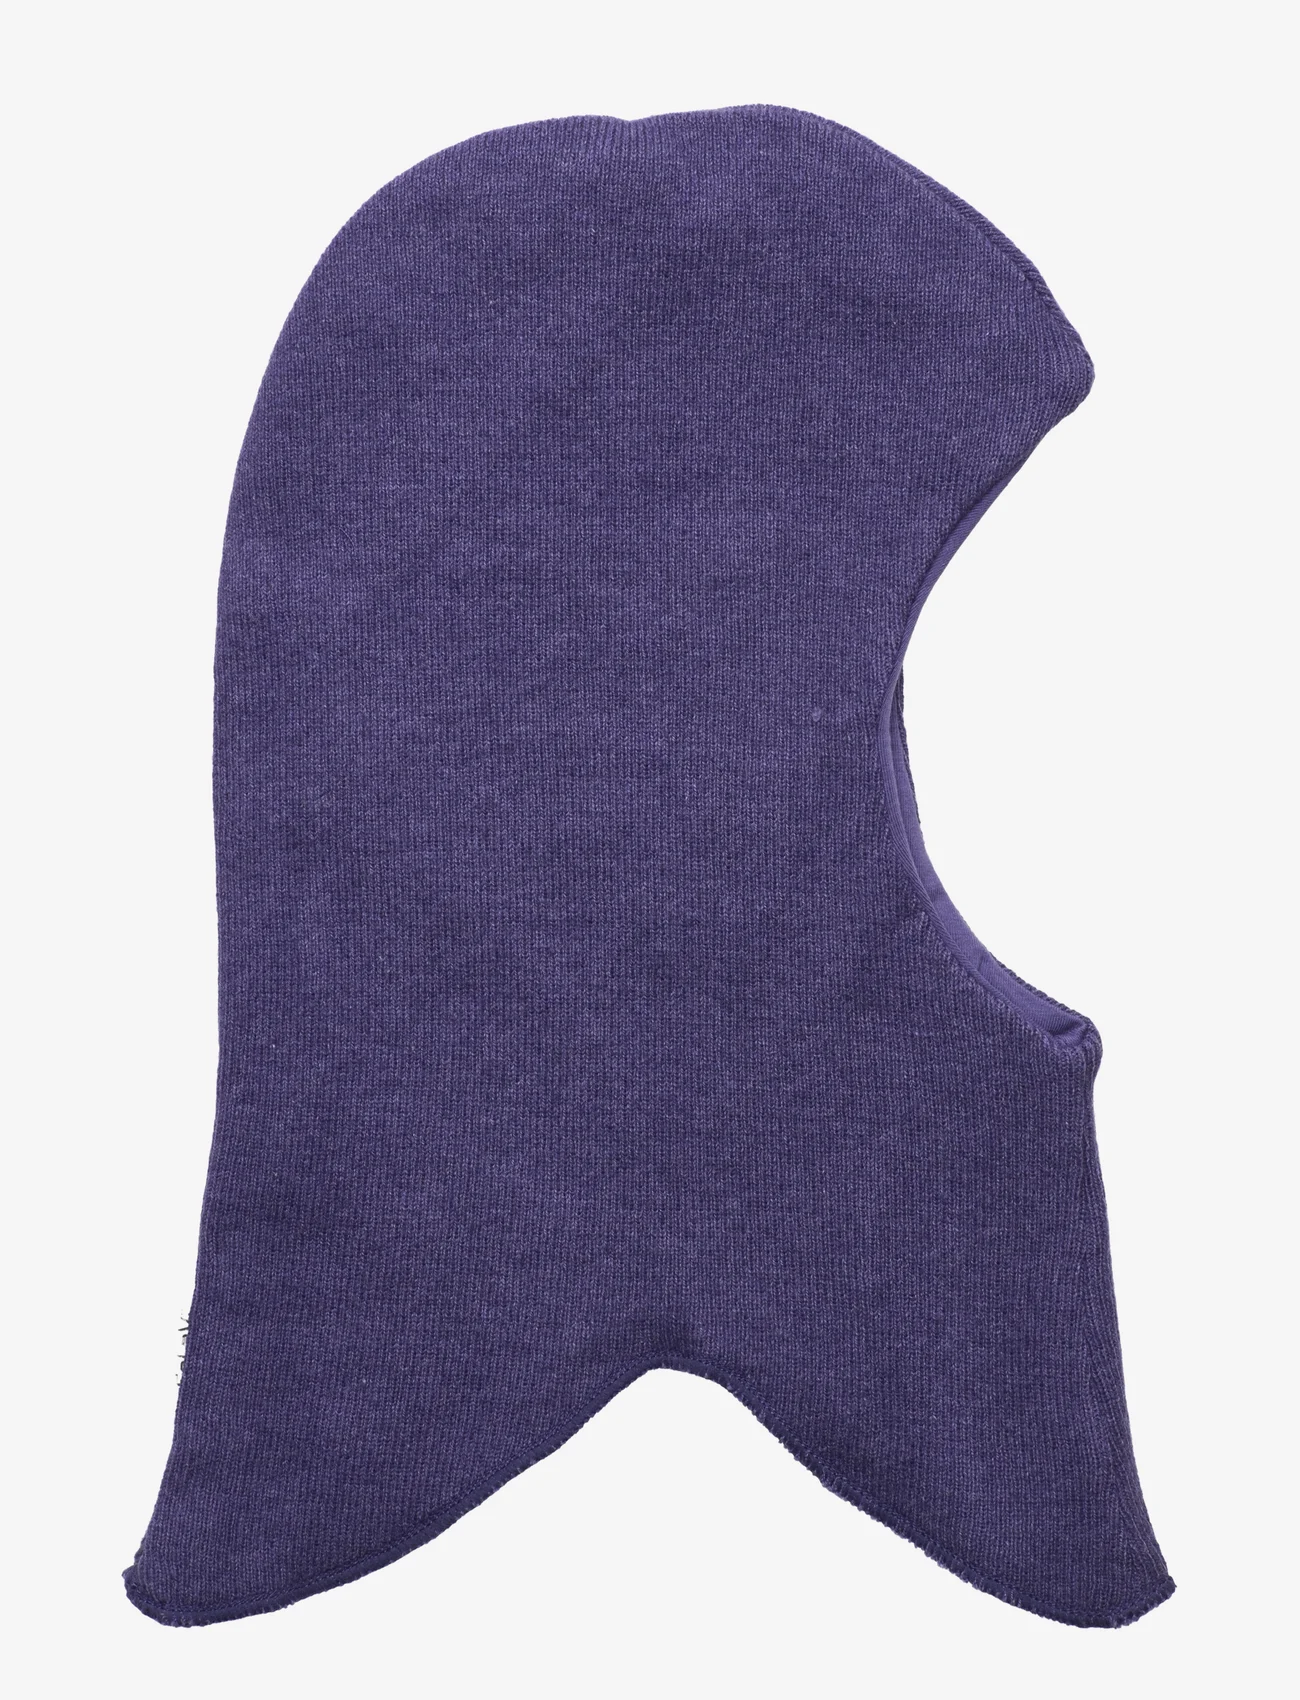 CeLaVi - Balaclava - Knitted - lowest prices - twilight purple melange - 0